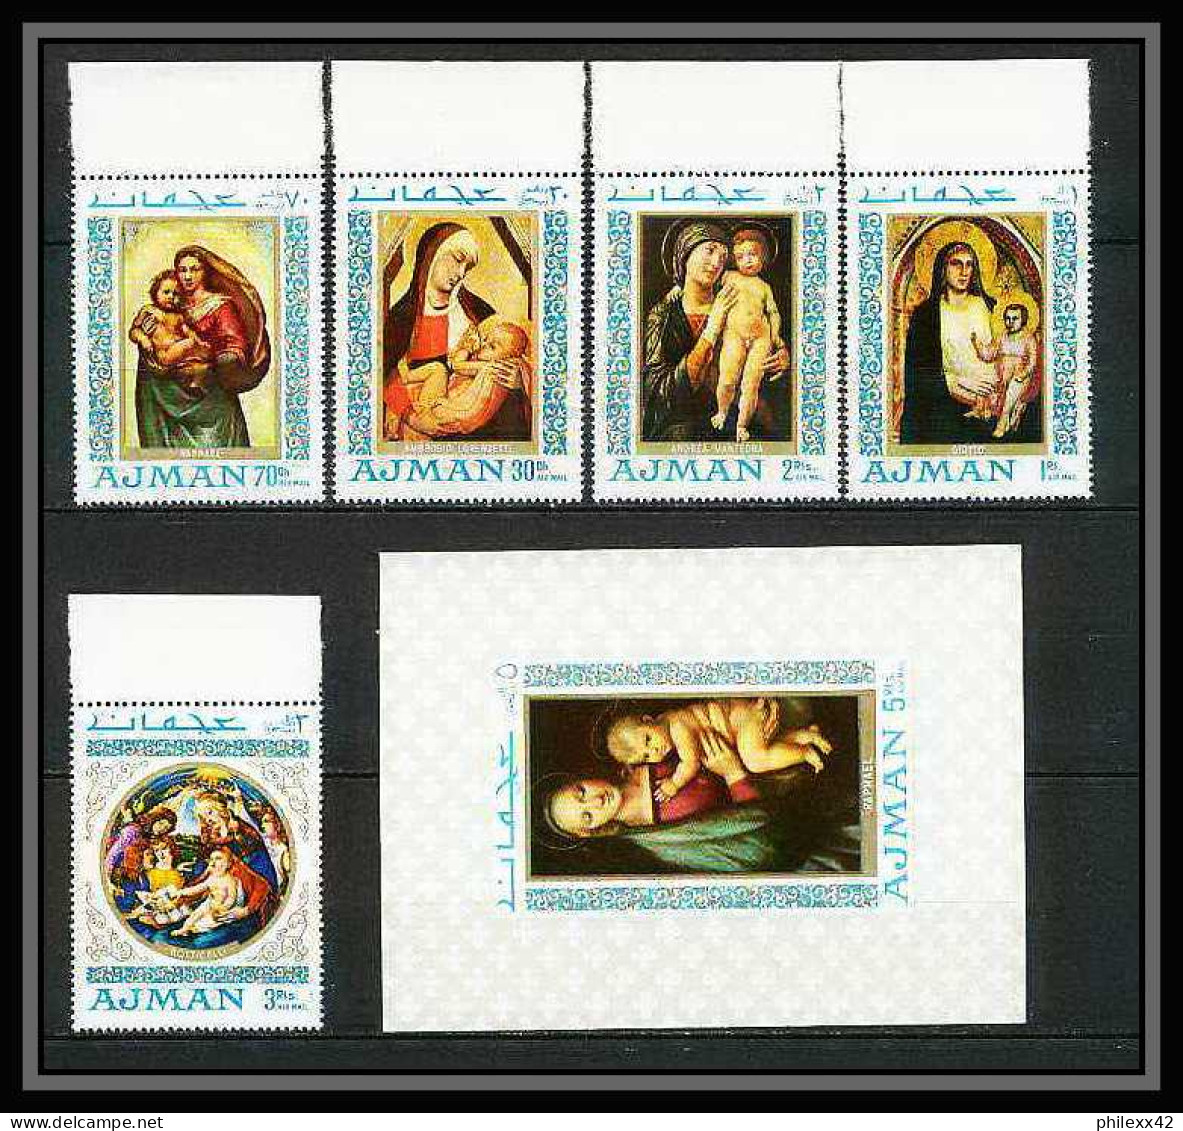 042k - Ajman - MNH ** Mi N° 327 / 331 A + Bloc 66 Madones (madonna) Raphael / Botticelli Tableaux - Peinture (painting)  - Madonna